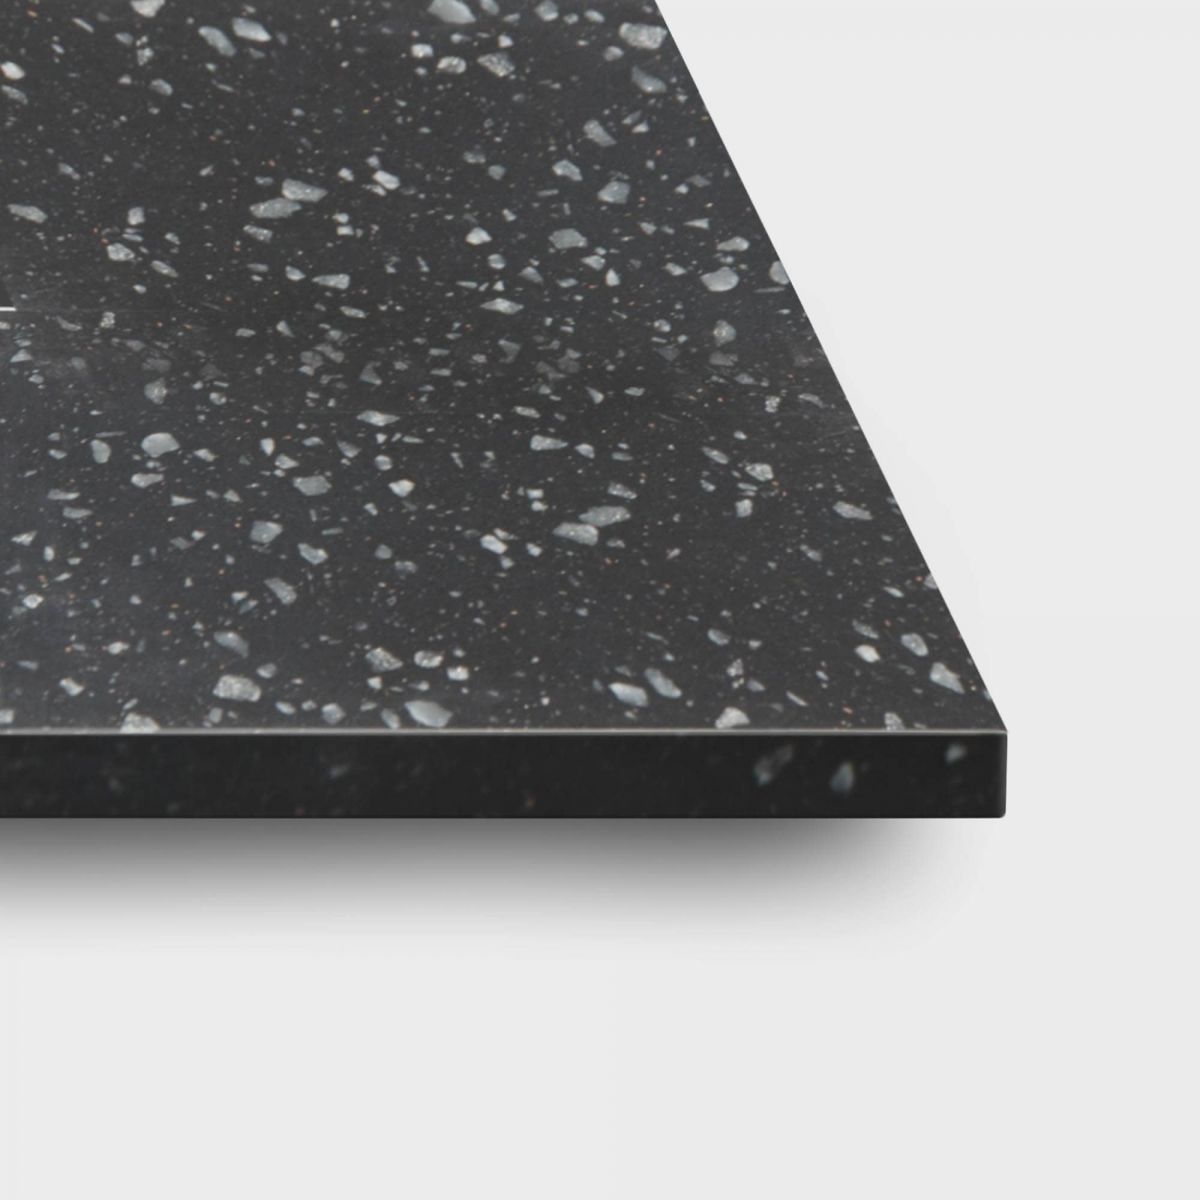 Black Granite - Kordura Top